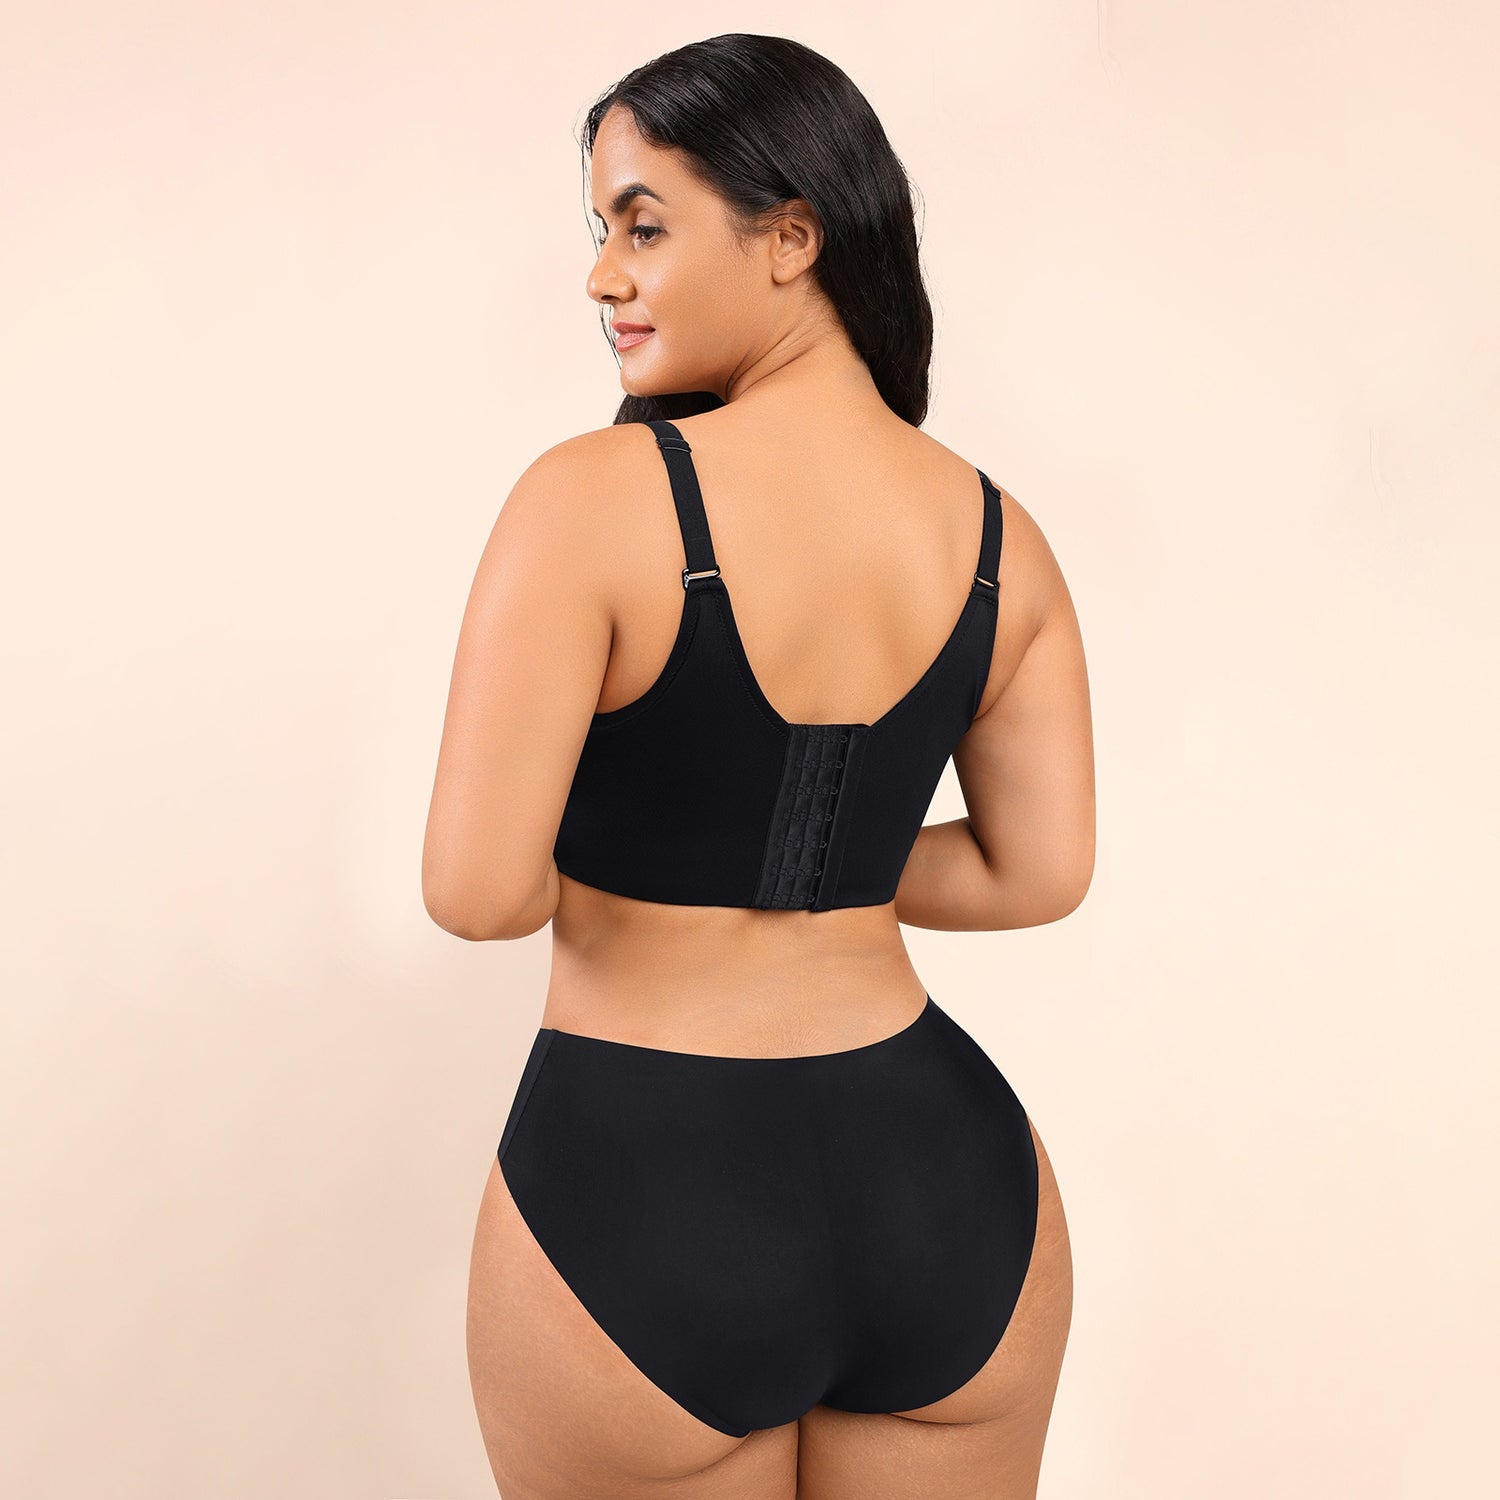 Plus Size Bras Women Hide Back Fat Underwear Shpaer Incorporated